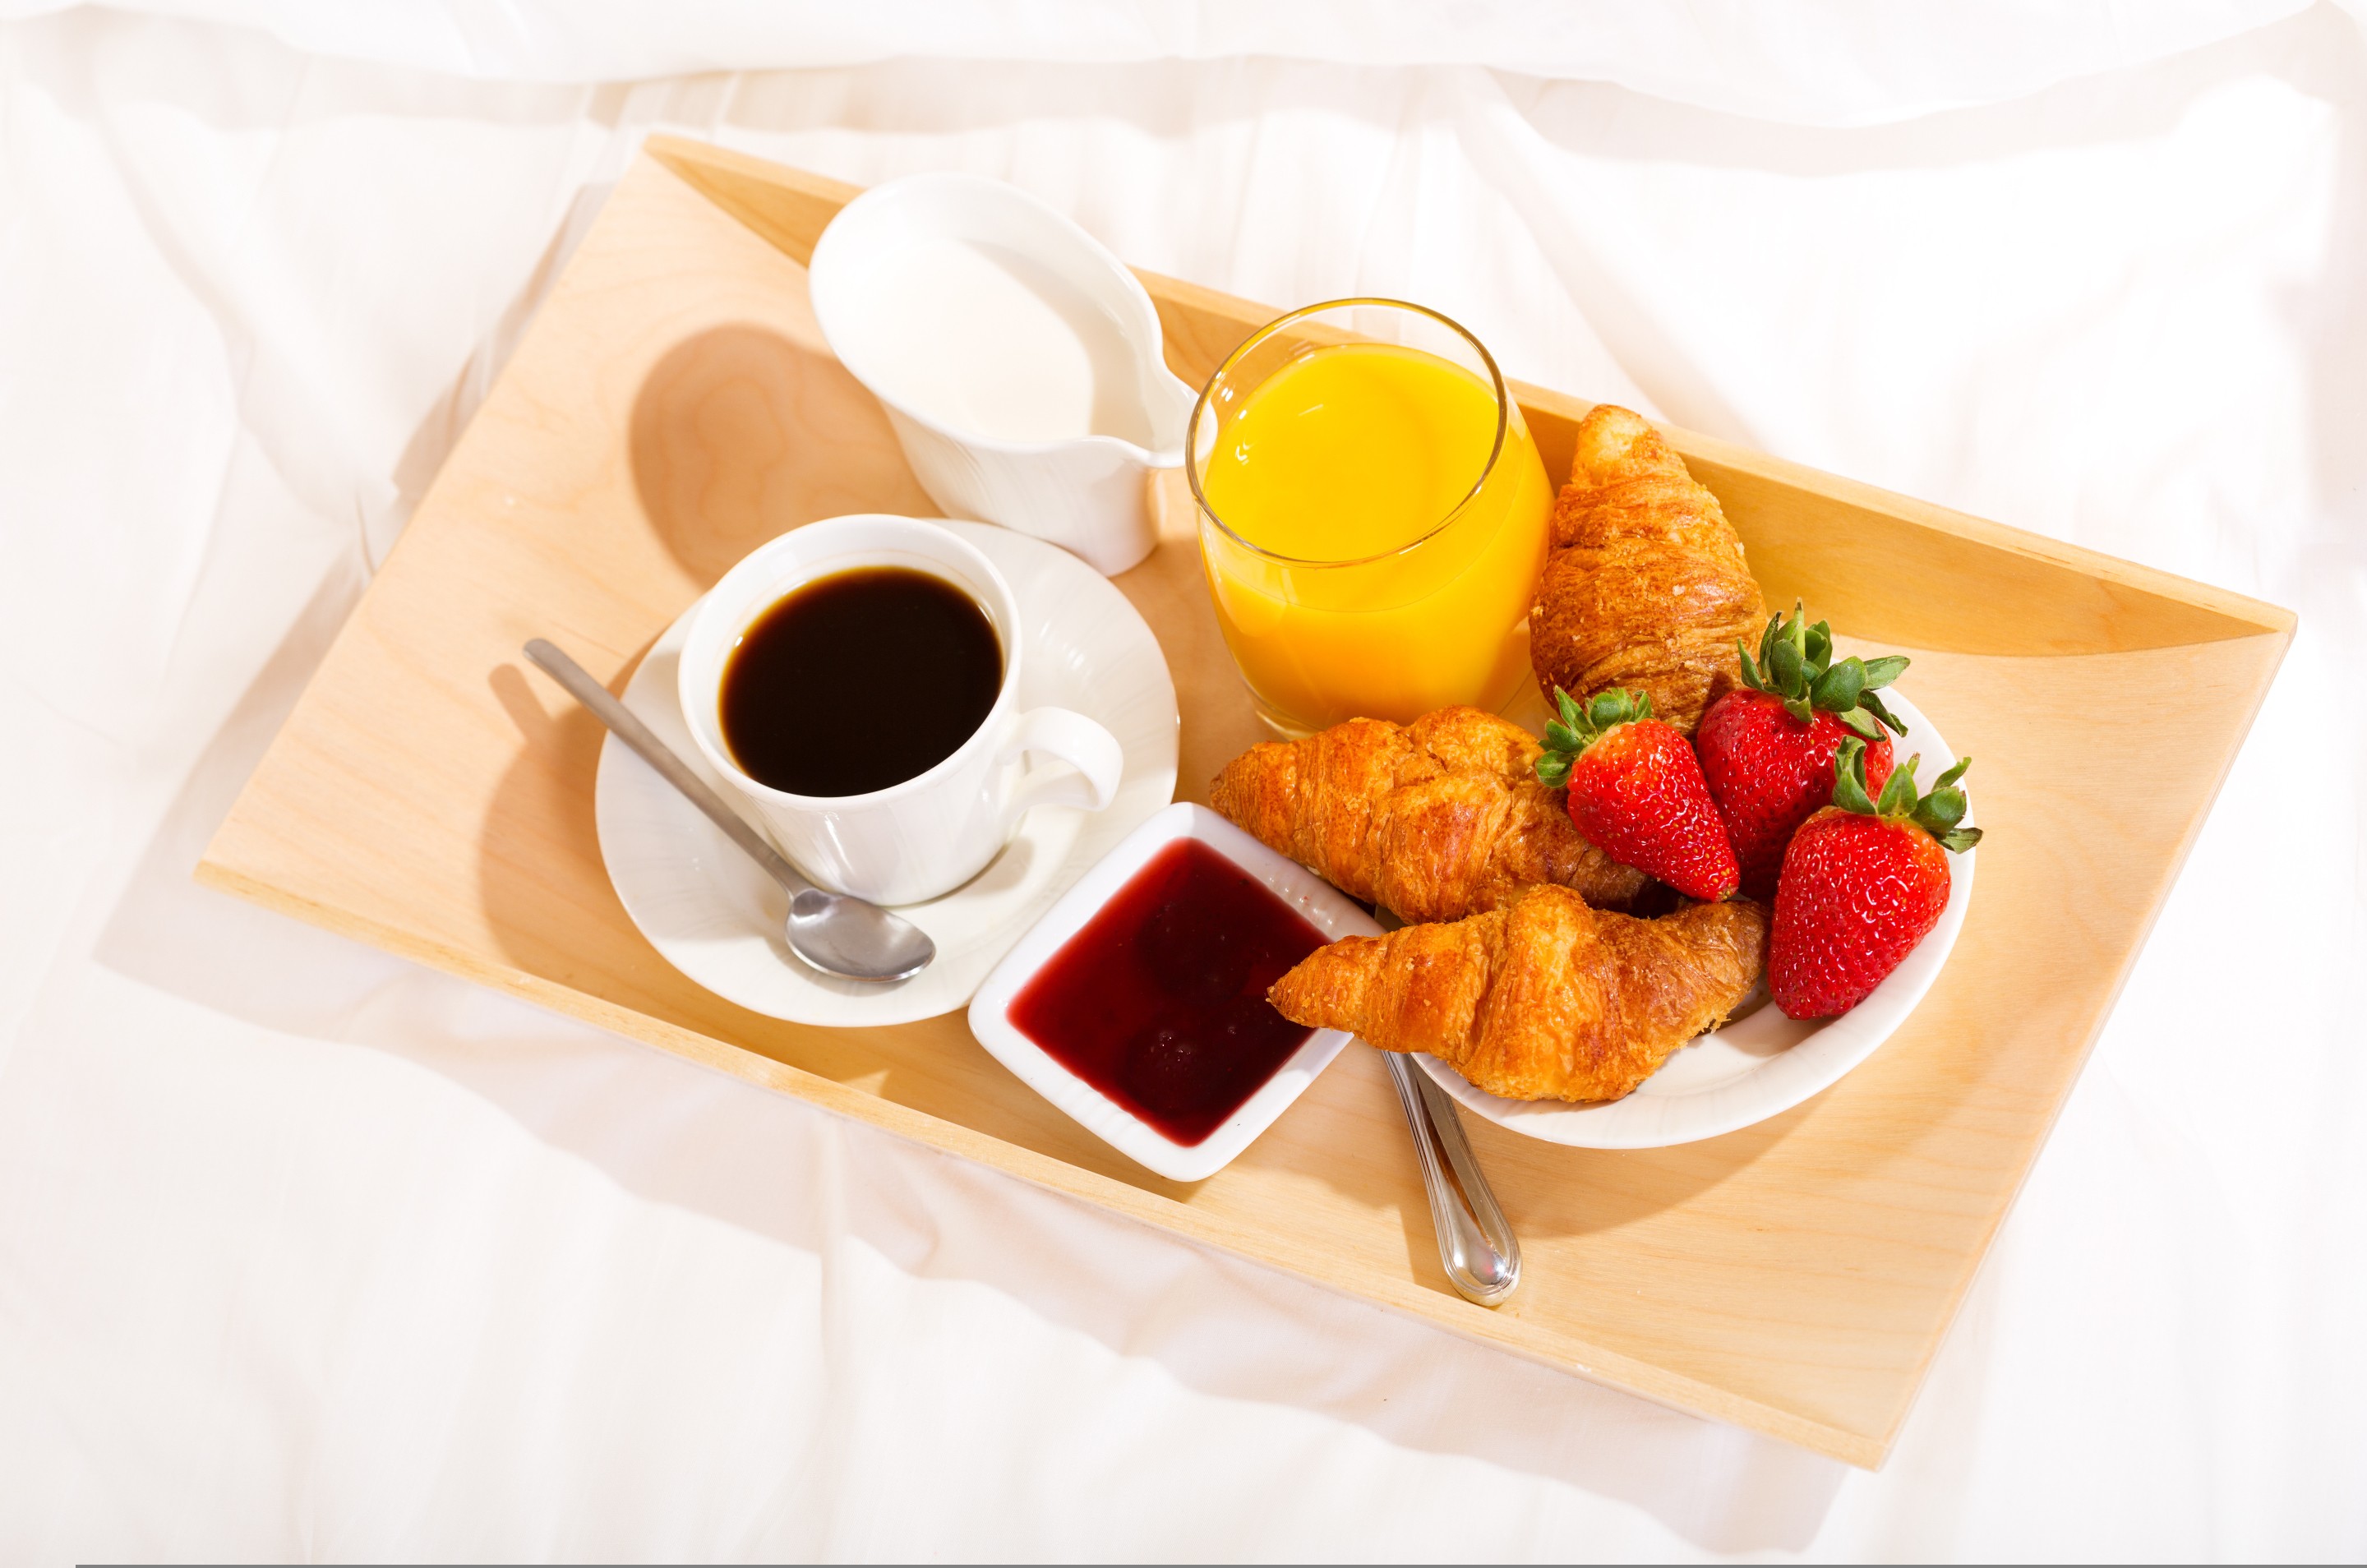 General 2880x1908 coffee breakfast food strawberries fruit cup spoon croissants closeup simple background juice orange juice